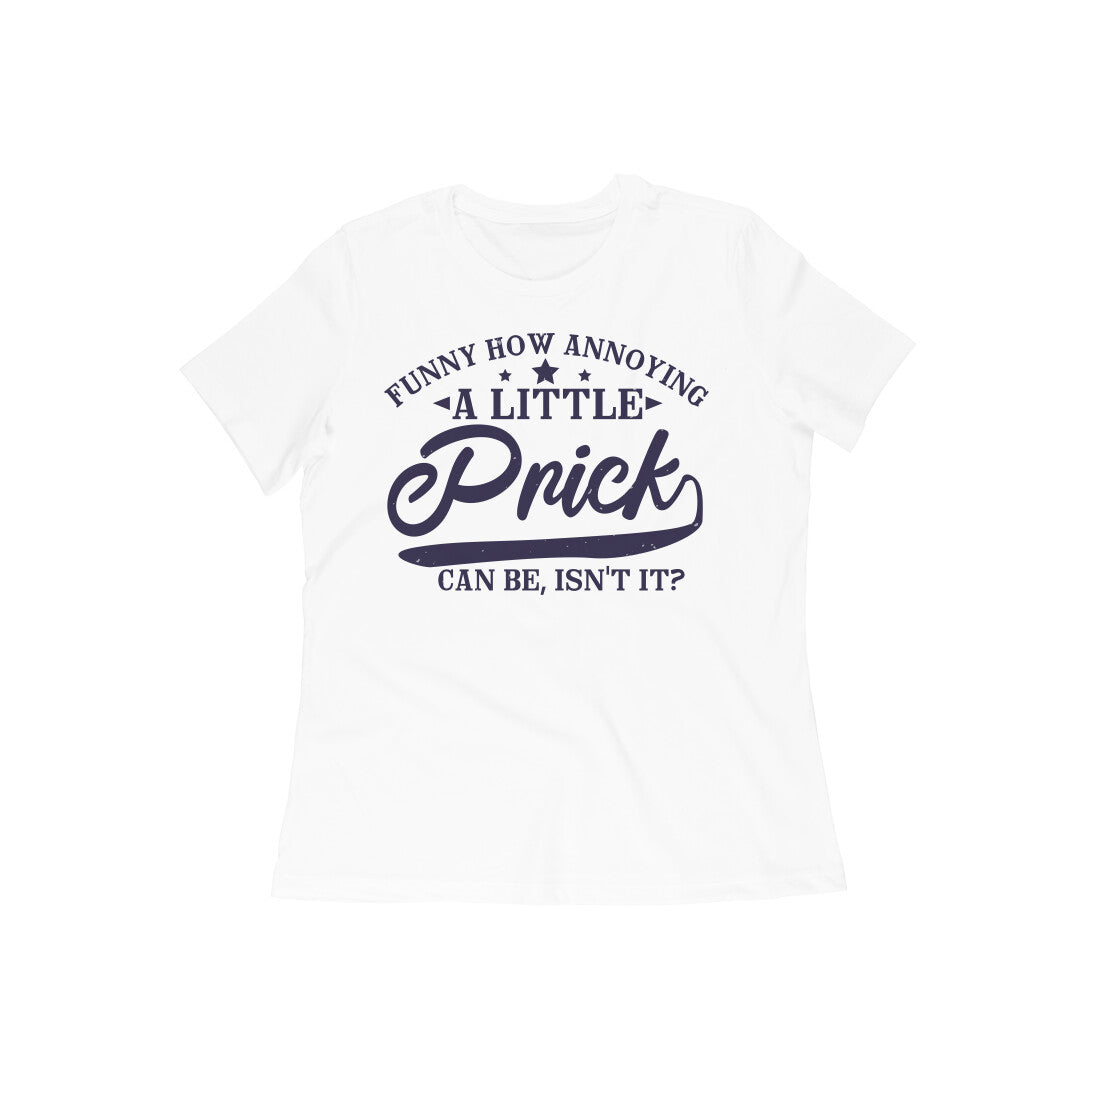 TNH - Women's Round Neck Tshirt - A Little Prick